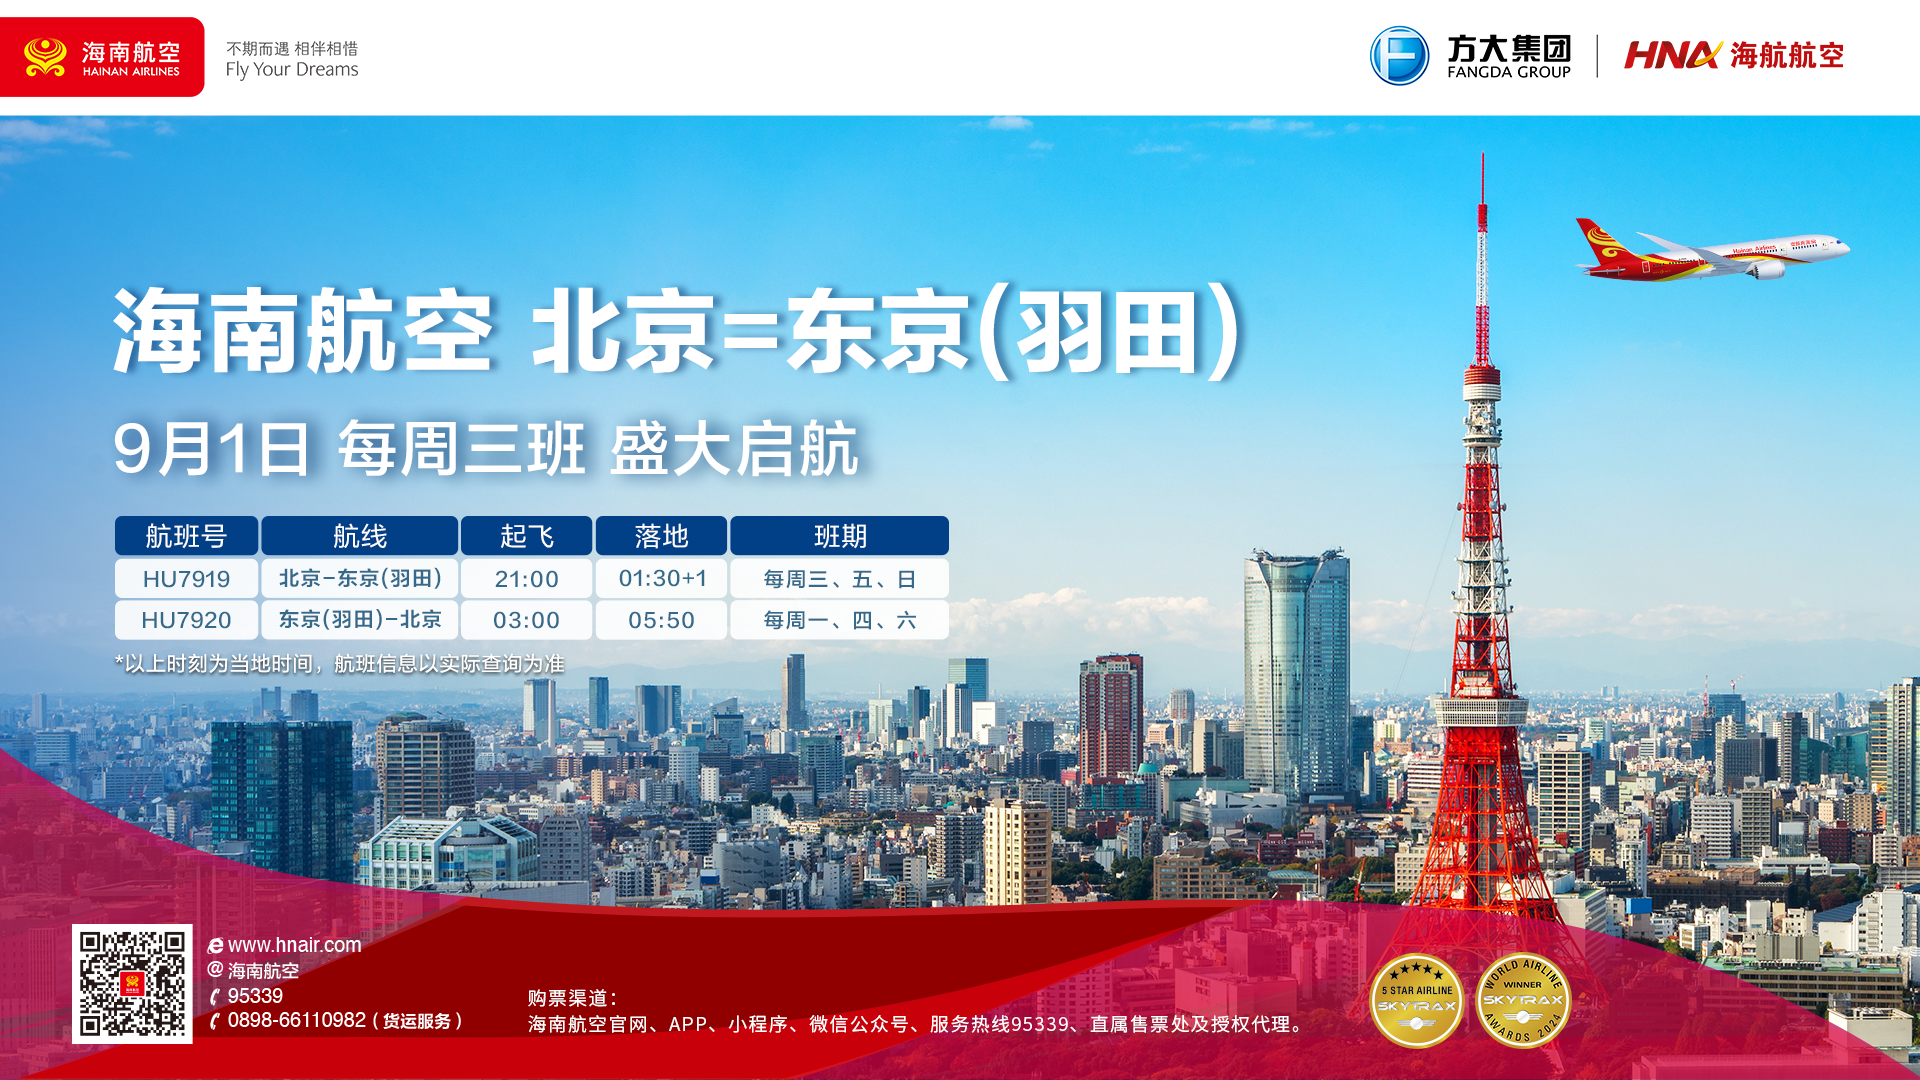 9月1日，海南航空计划开通北京—东京（羽田）国际航线